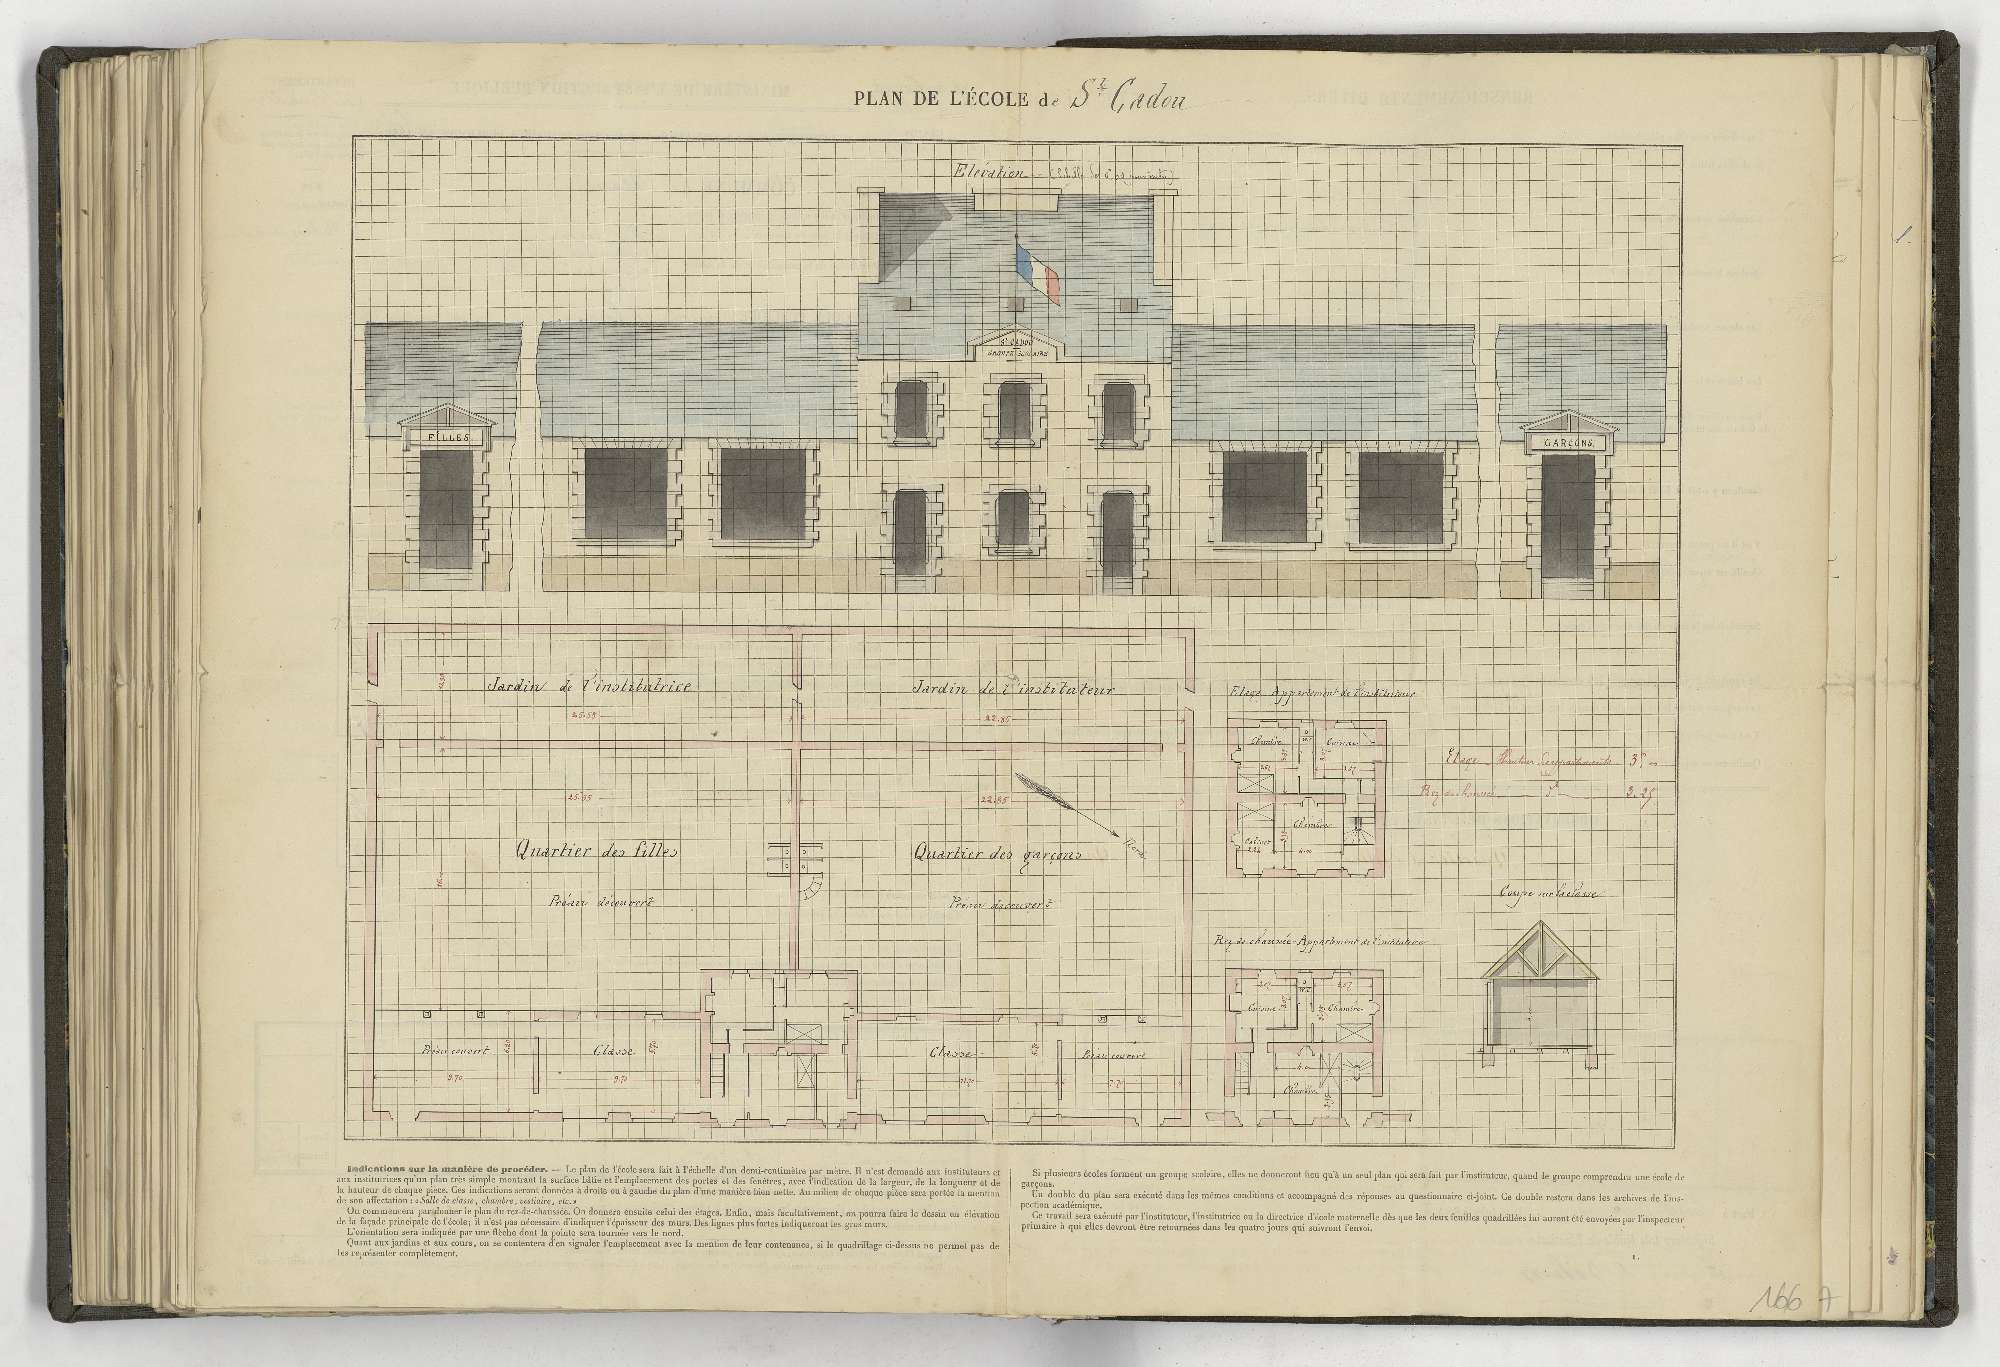 Plan de l'école de Saint-Cadou, 1884.